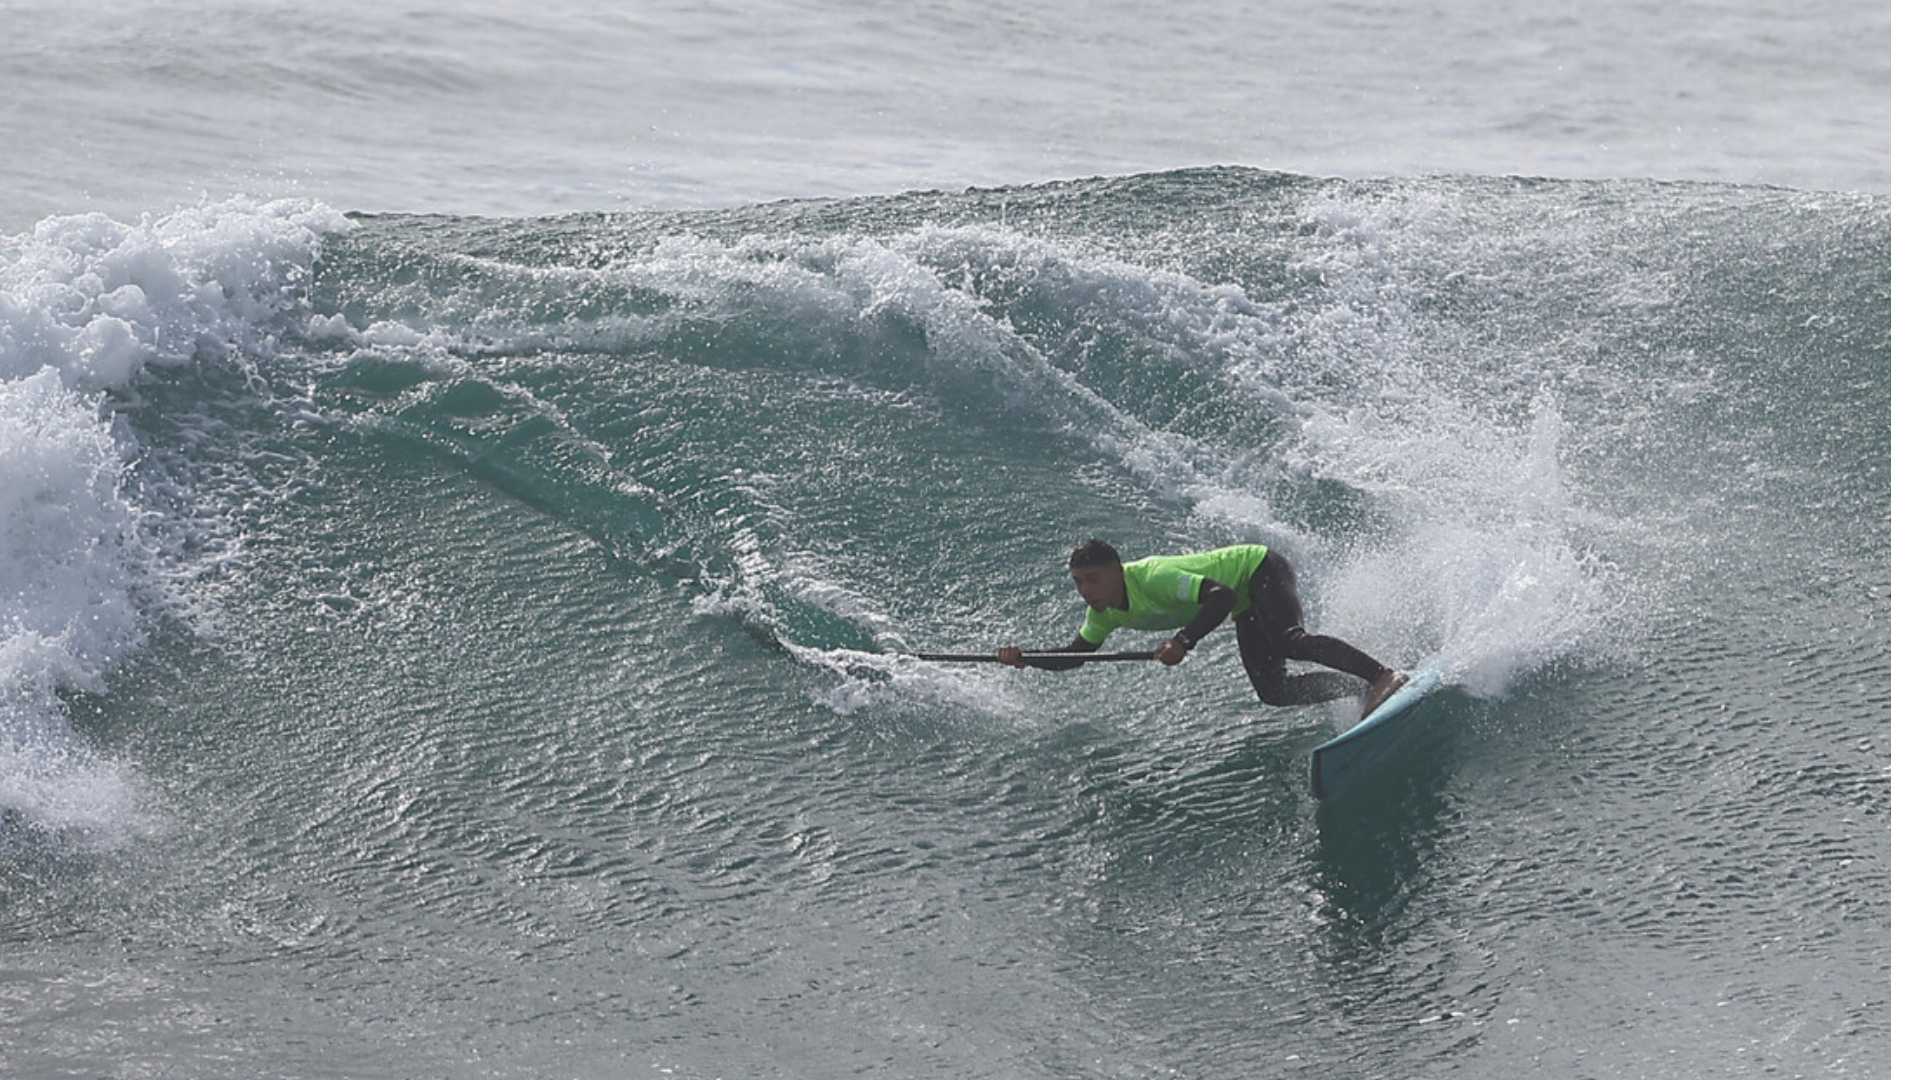 Chileno Gabriel Salazar clasifica al cuadro principal del SUP en el surf